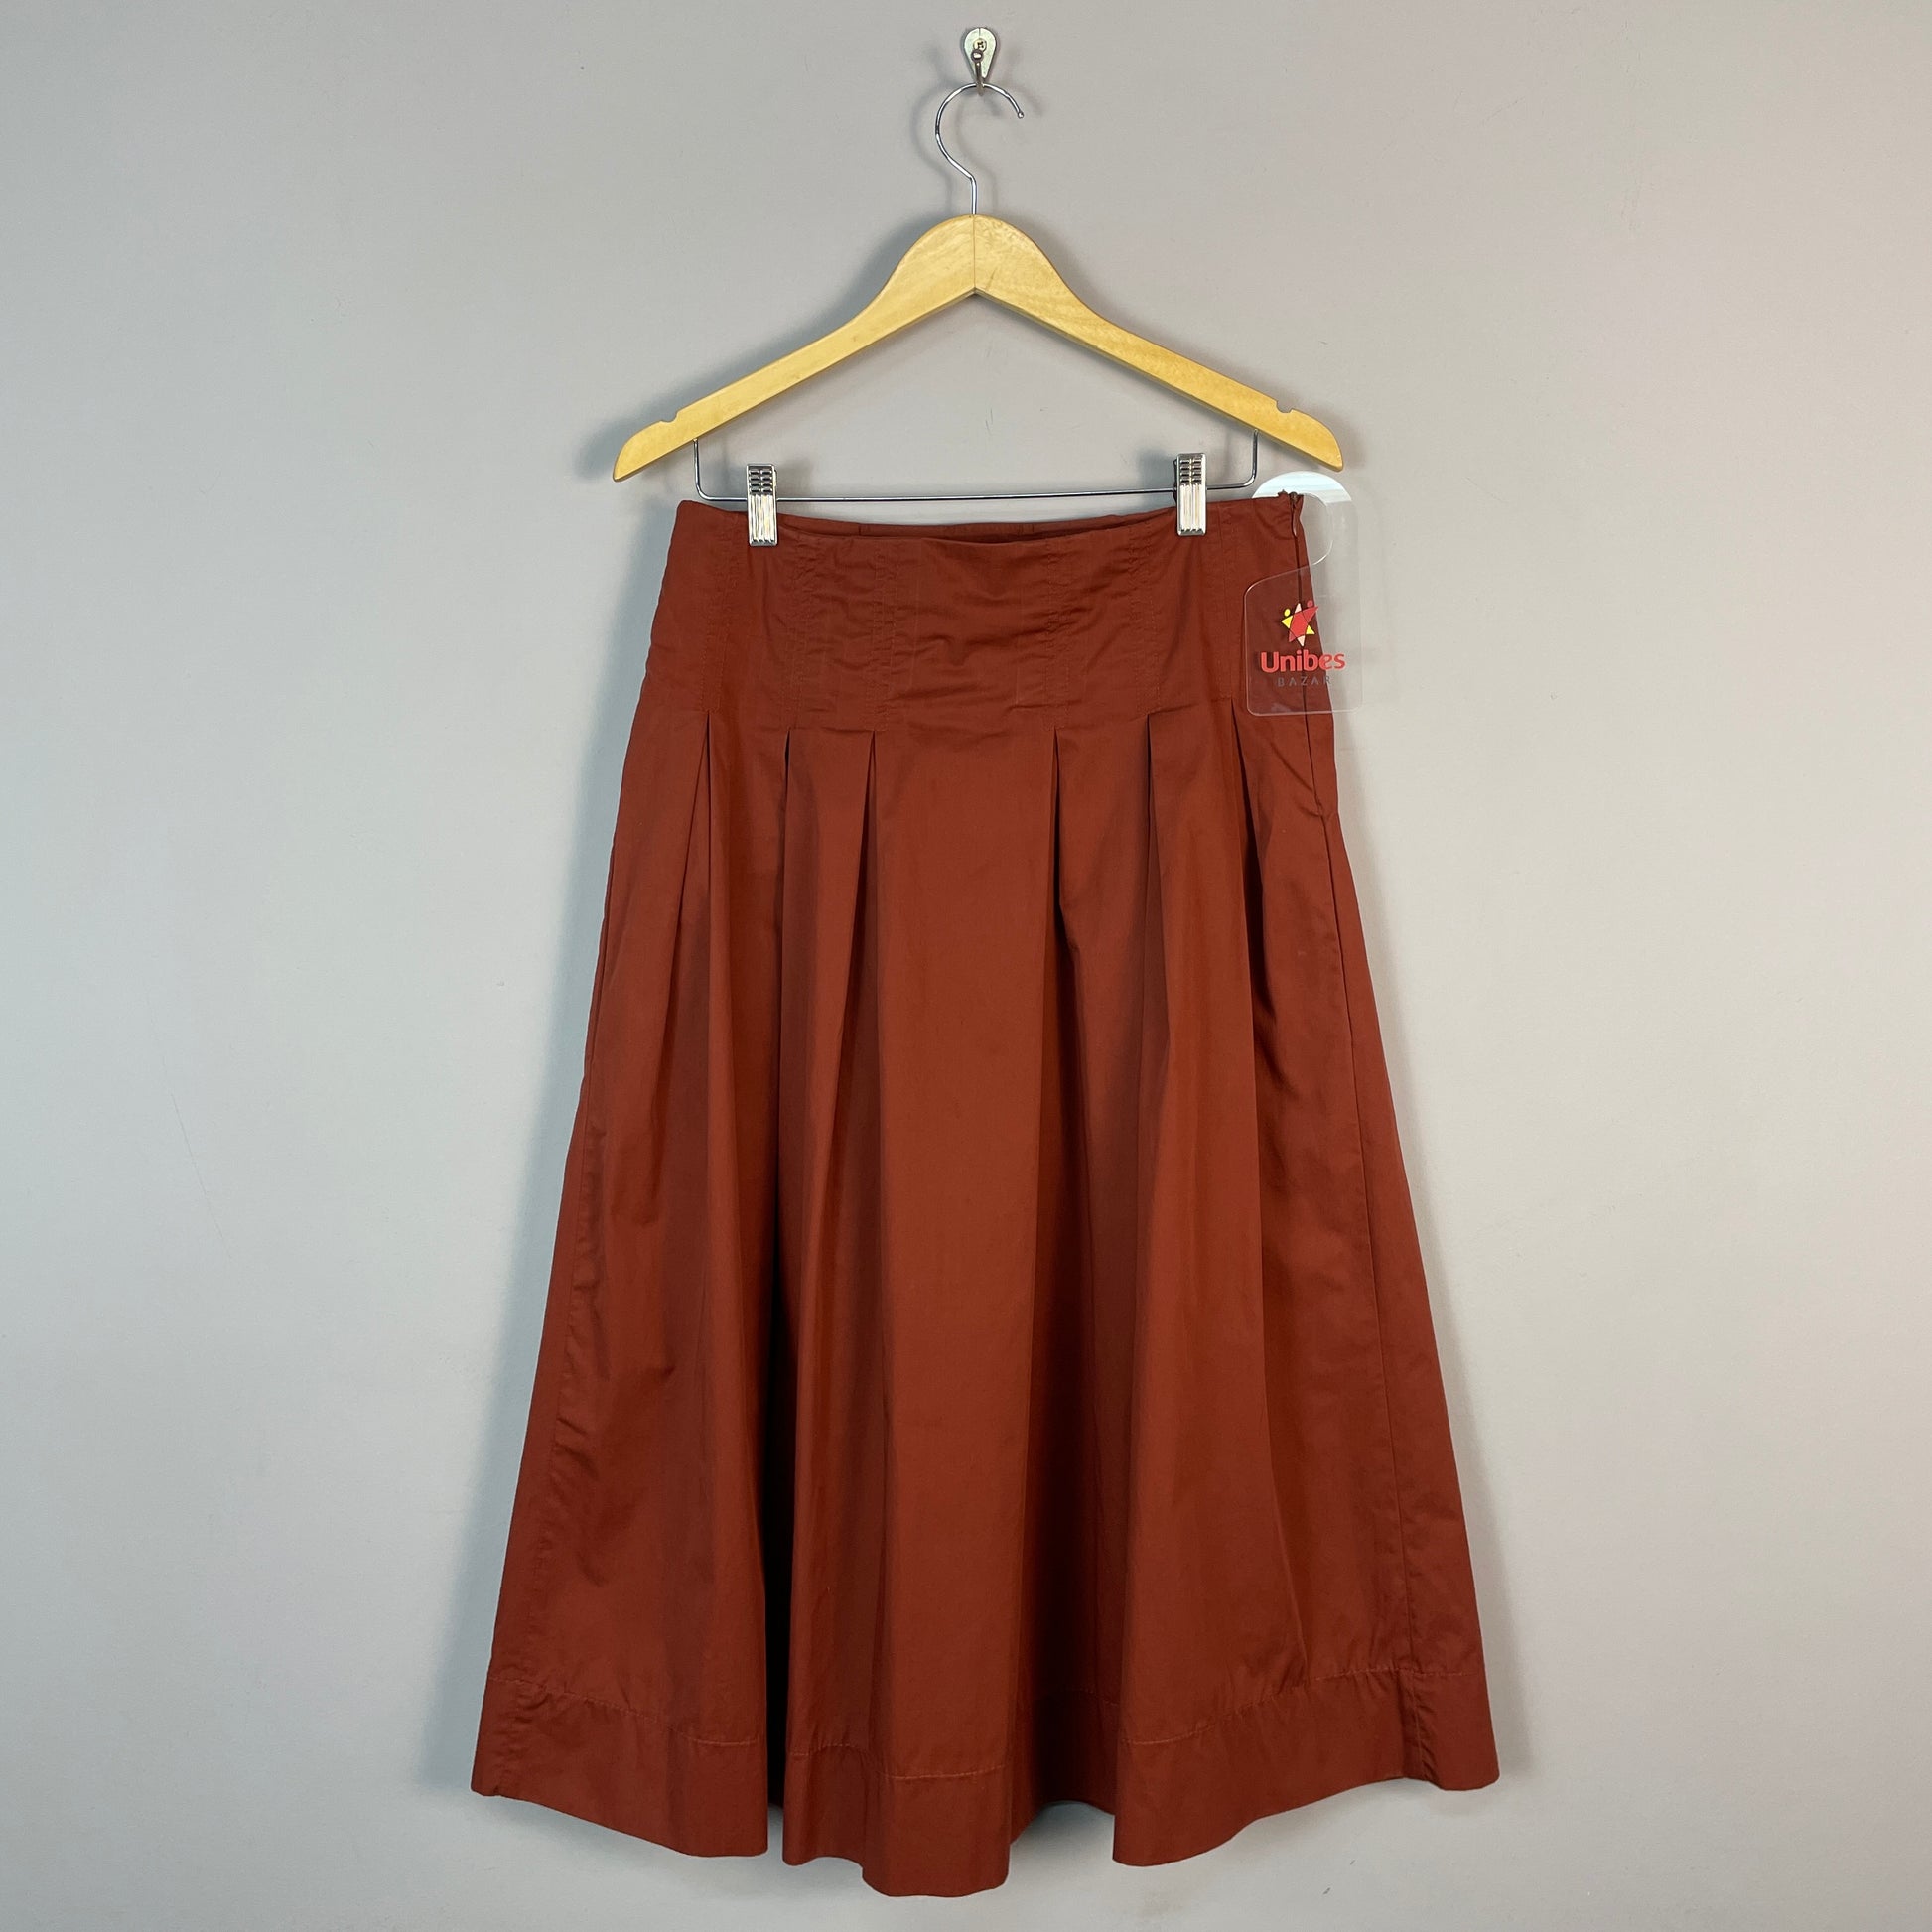 Zara produz saia quadriculada e é acusada de apropriação cultural